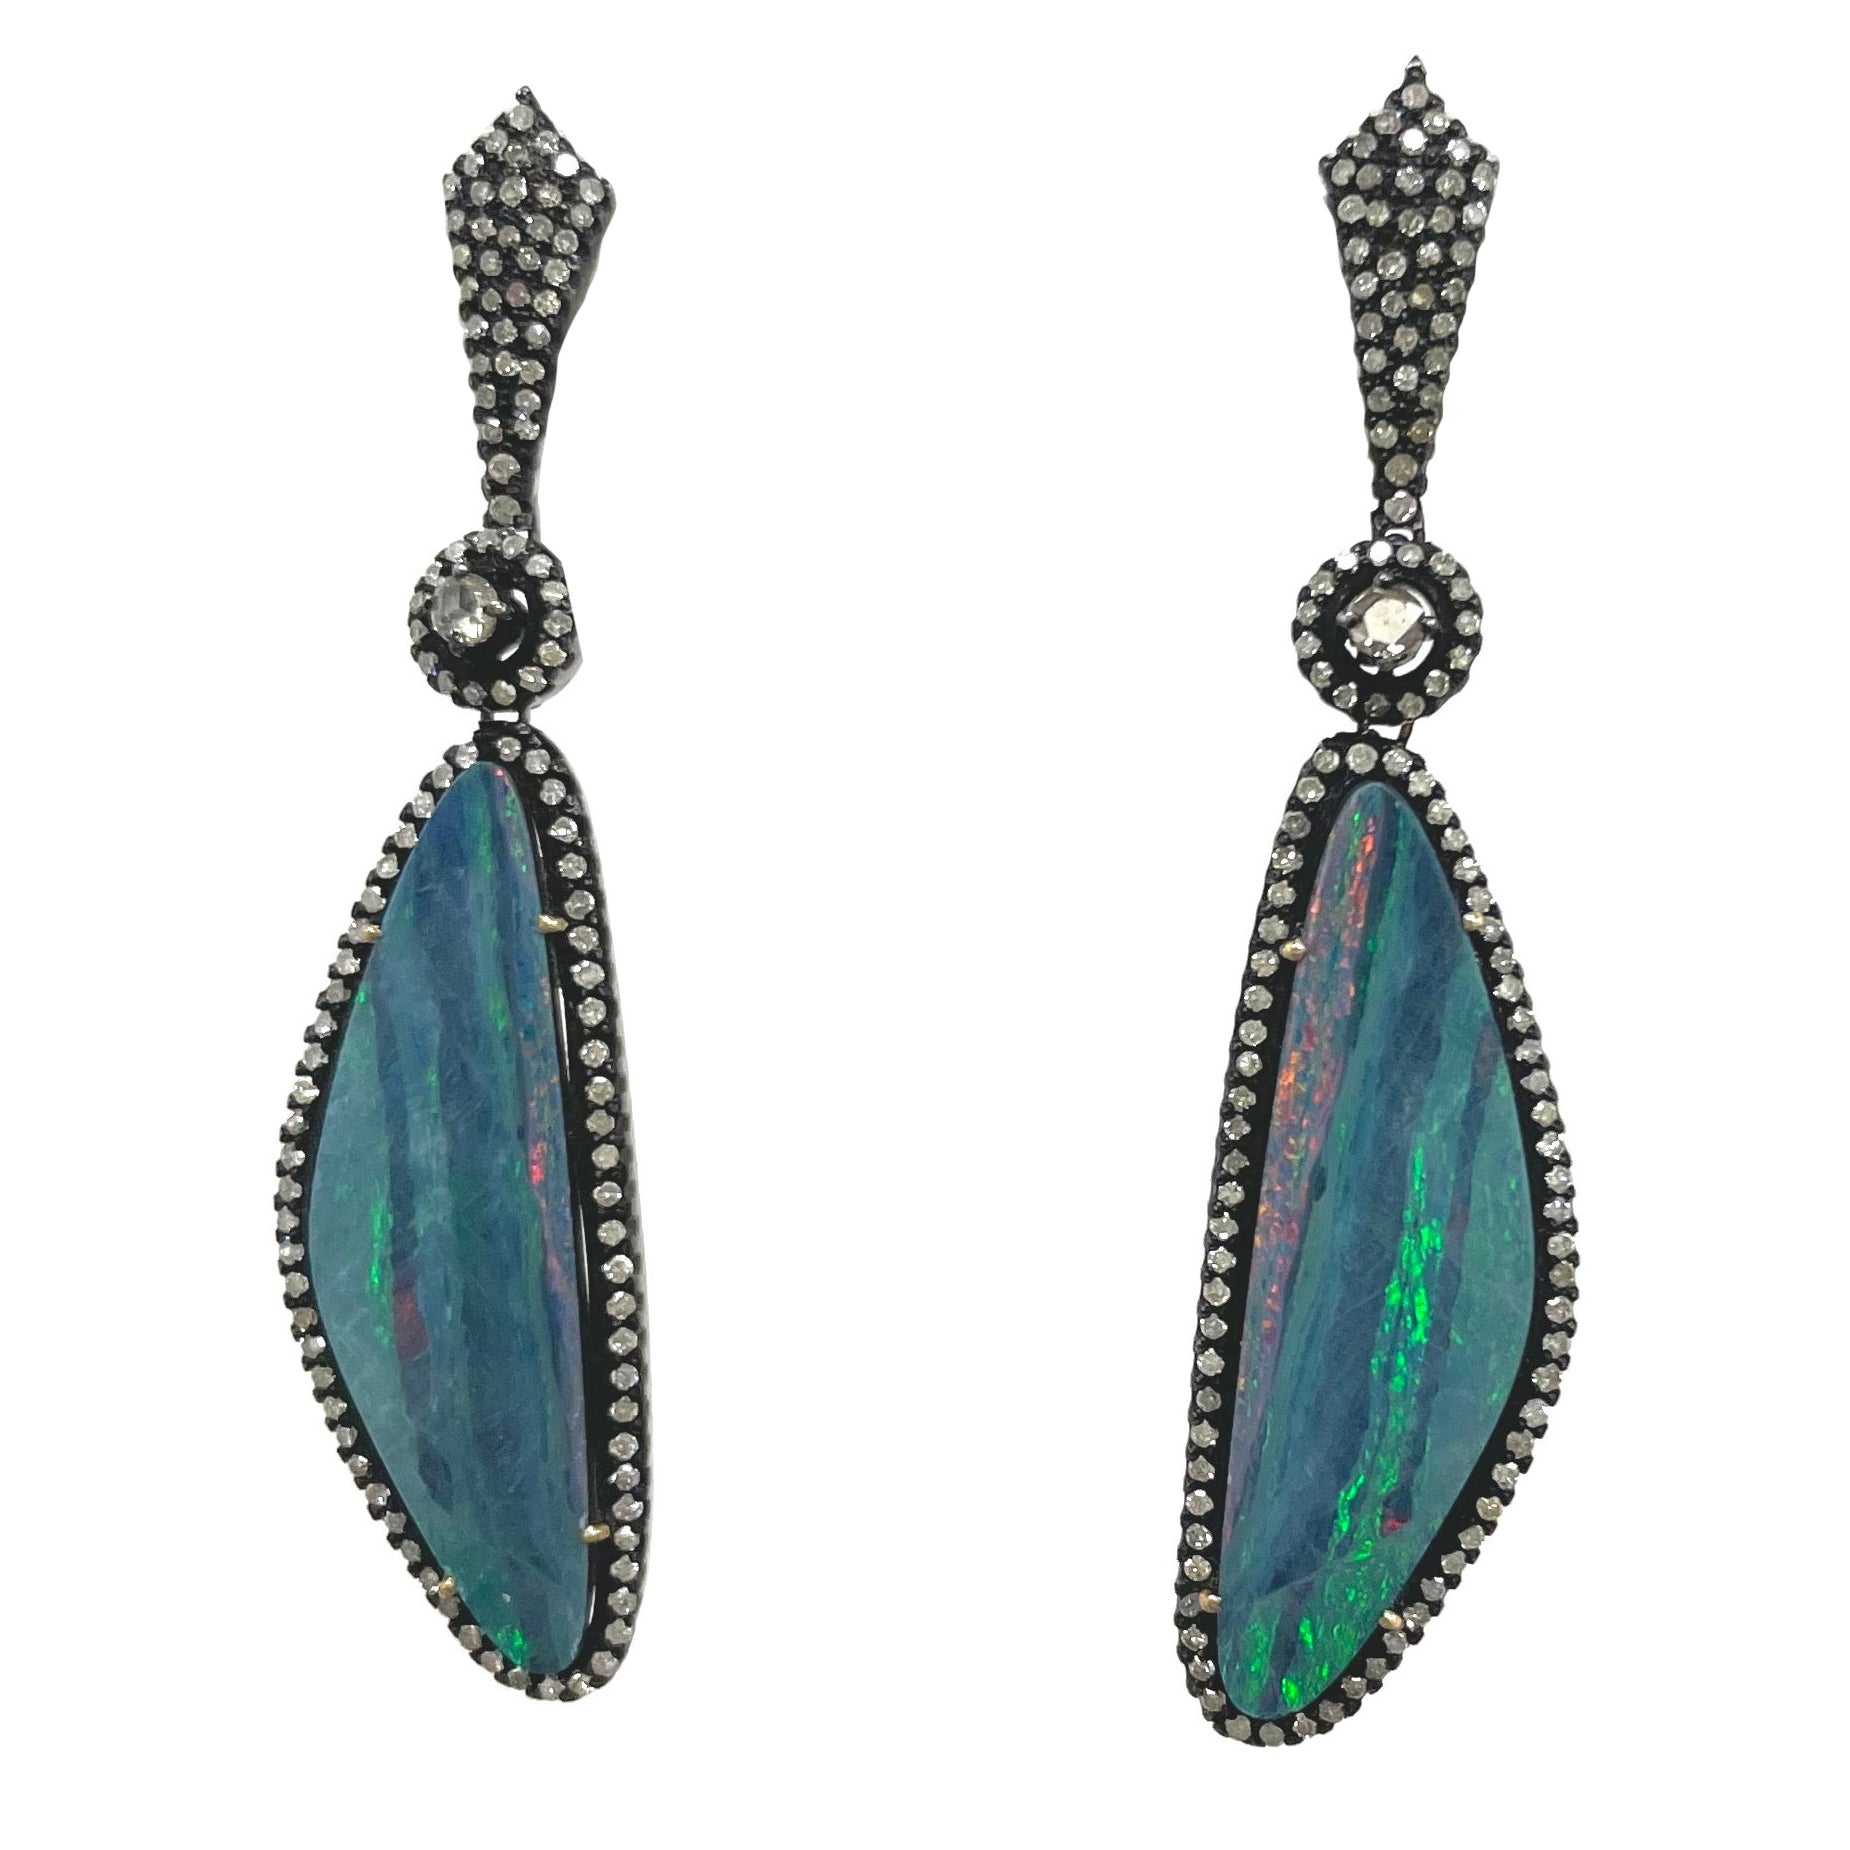 Australian Black Opal Onyx Earrings Pendant Made for Jessye Norman ...